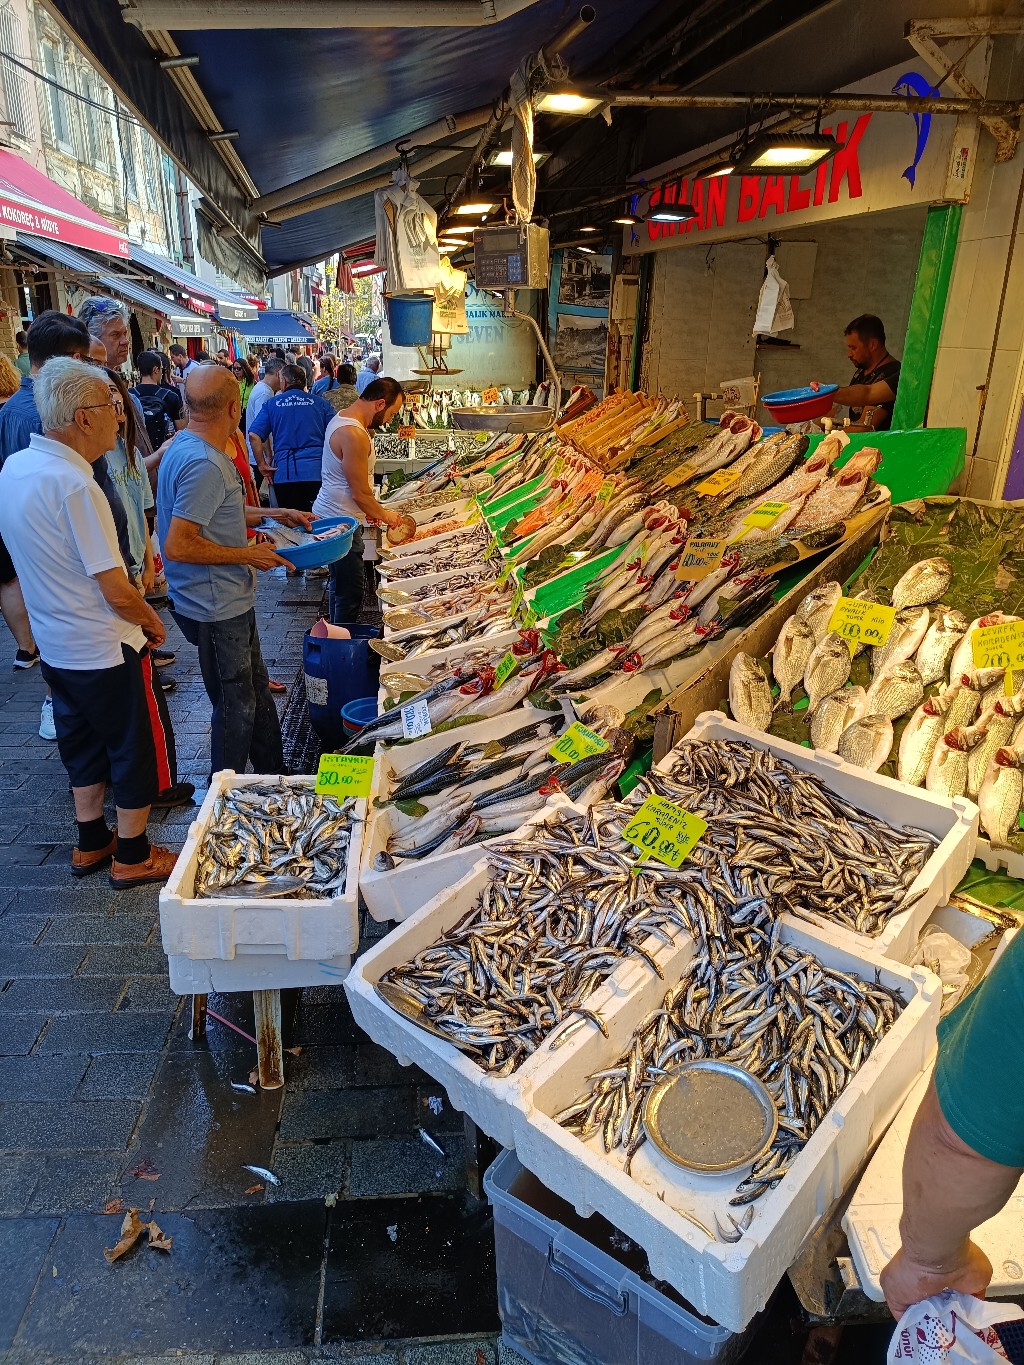 Kadıköy Tarihi Çarşı Balıkçılar Sokağı’nda balık çeşitleri dikkat çekici